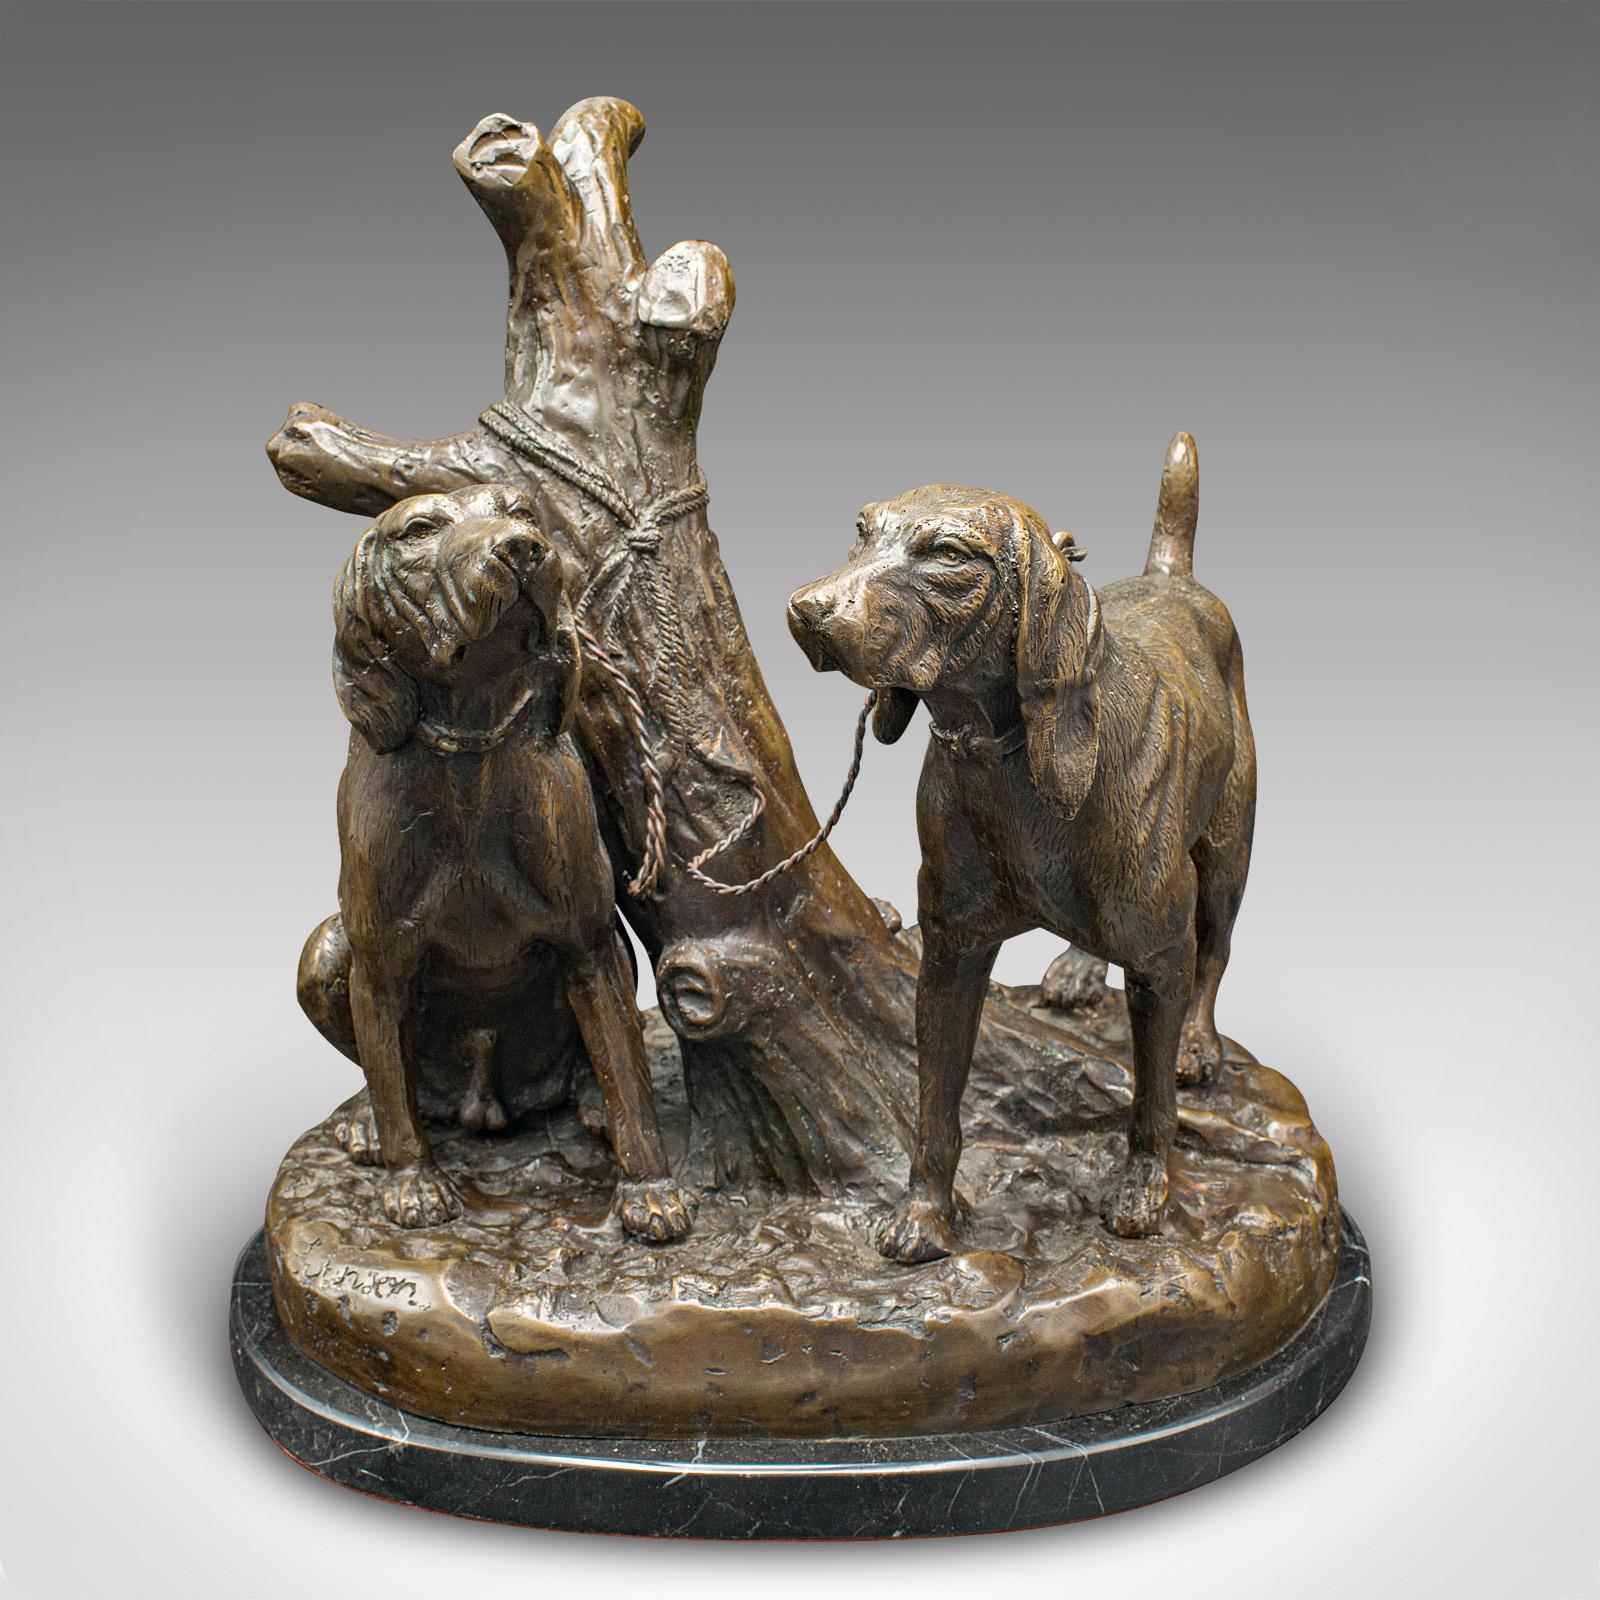 Dies ist eine schwere Vintage Bluthund Ornament. Eine amerikanische Hundeskulptur aus Bronze und Marmor von Grace Mott Johnson aus der Mitte des 20. Jahrhunderts, um 1950.

Herrlich gehaltvolles Ornament mit hohem Reiz für Hundeliebhaber
Zeigt eine